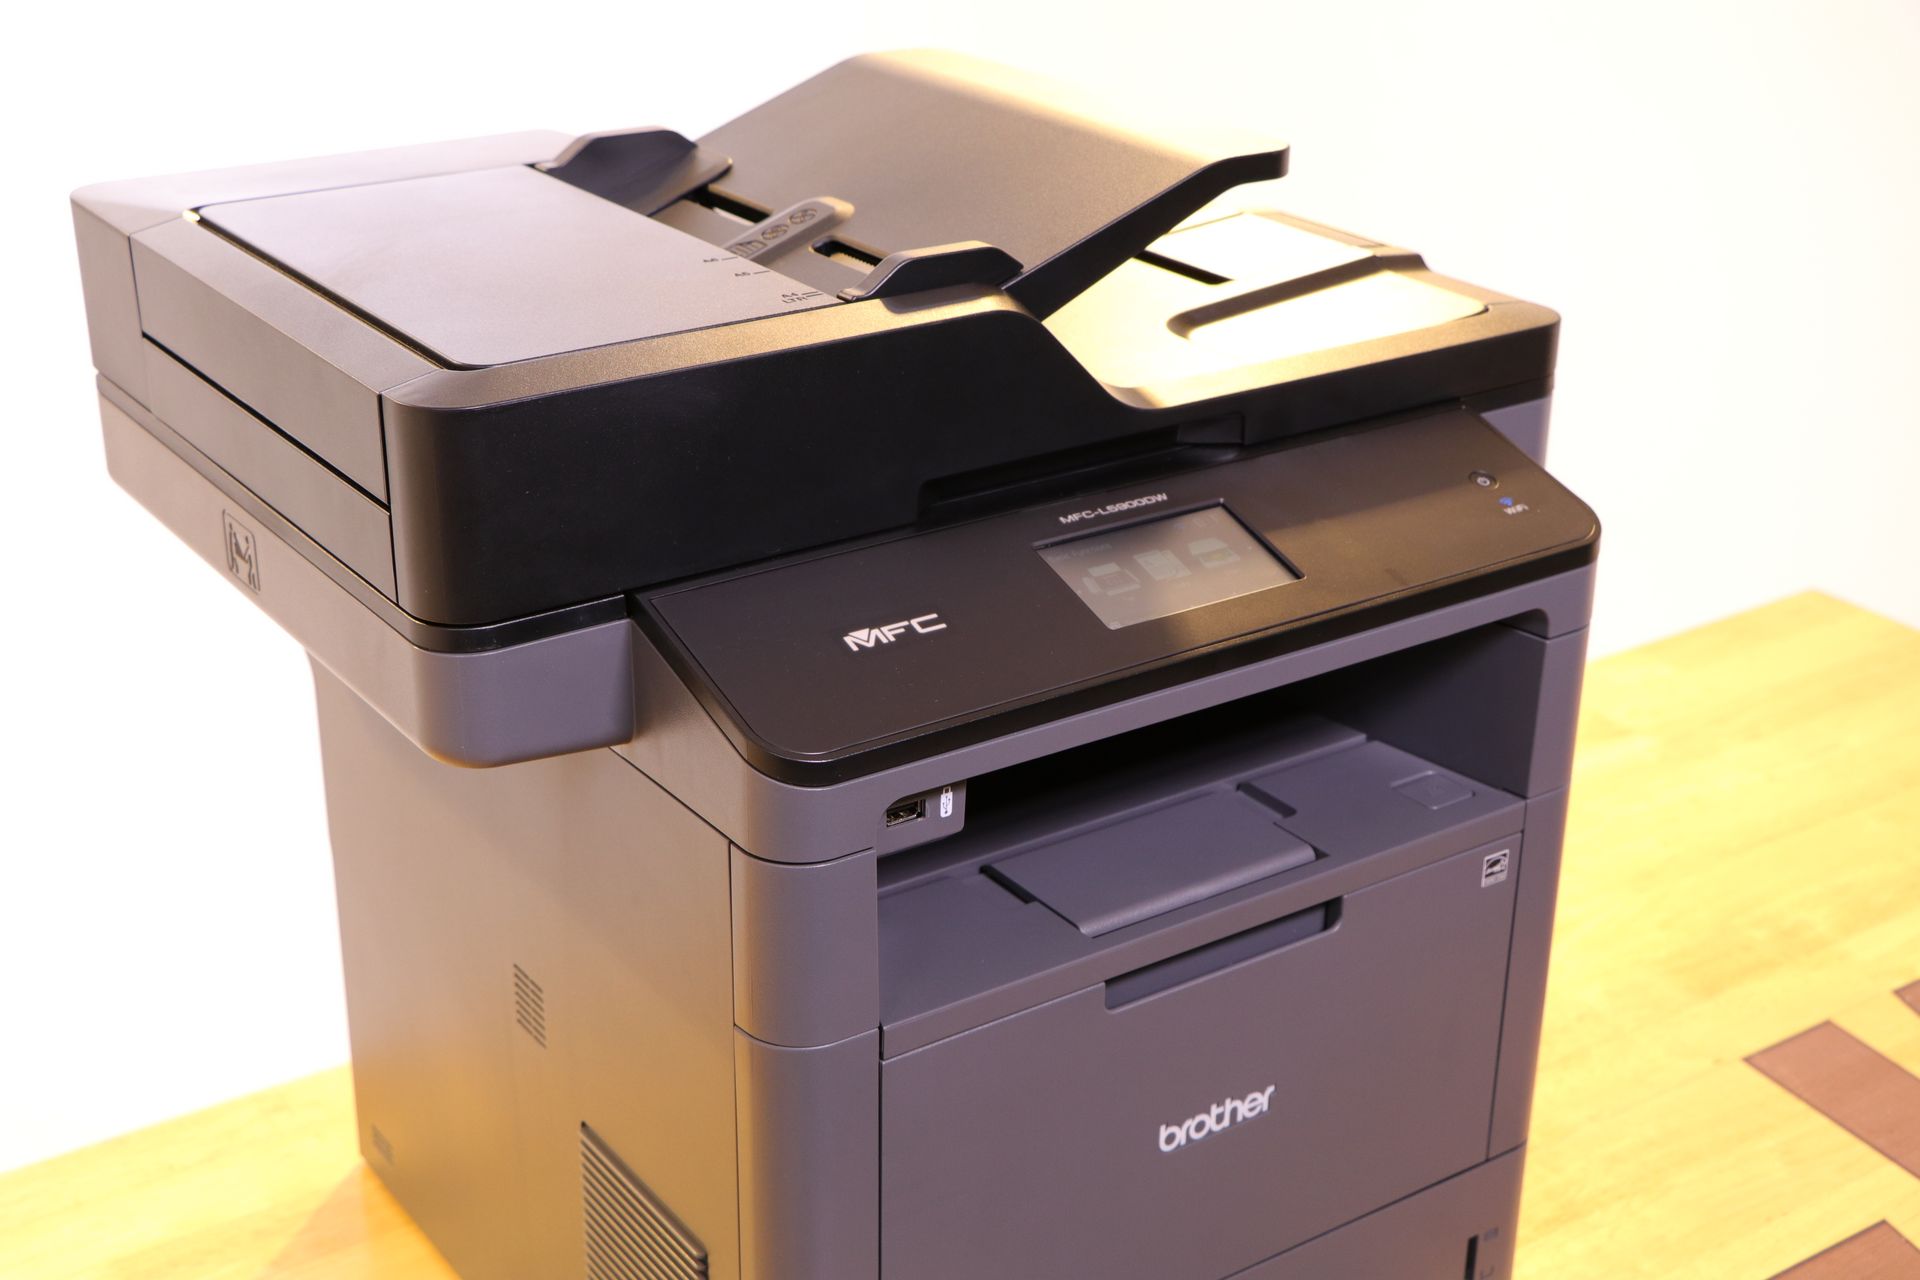 รีวิว Brother Laser Printer มาดูกันว่าเครื่องพิมพ์ยุคนี้ต้องทำอะไรได้